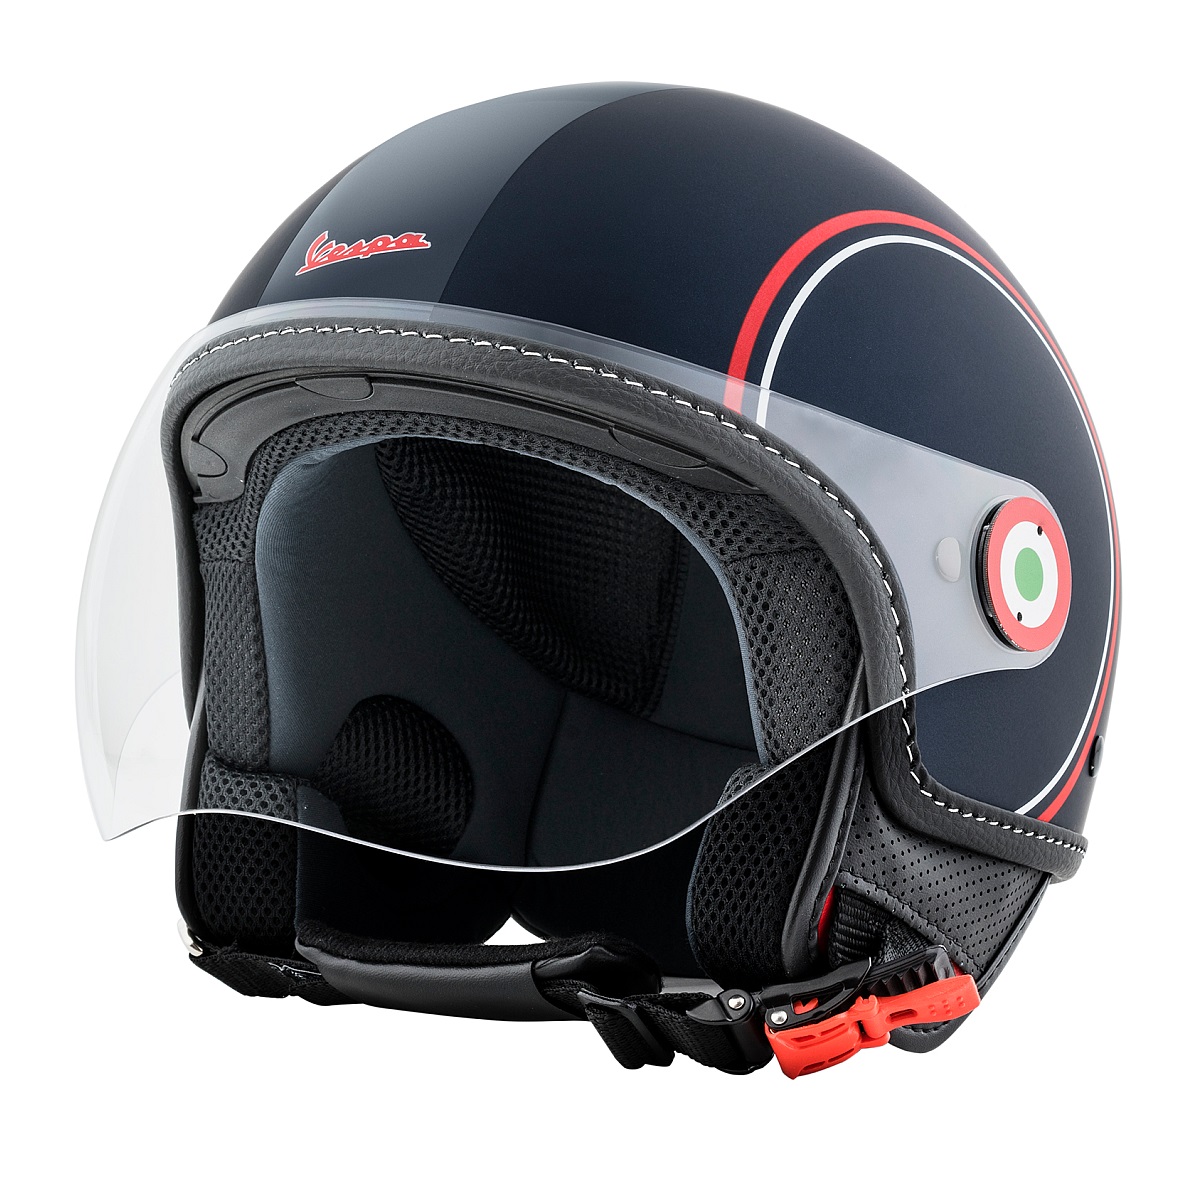  Vespa  Jet Helm  online kaufen MOTO4you Zweirad Onlineshop